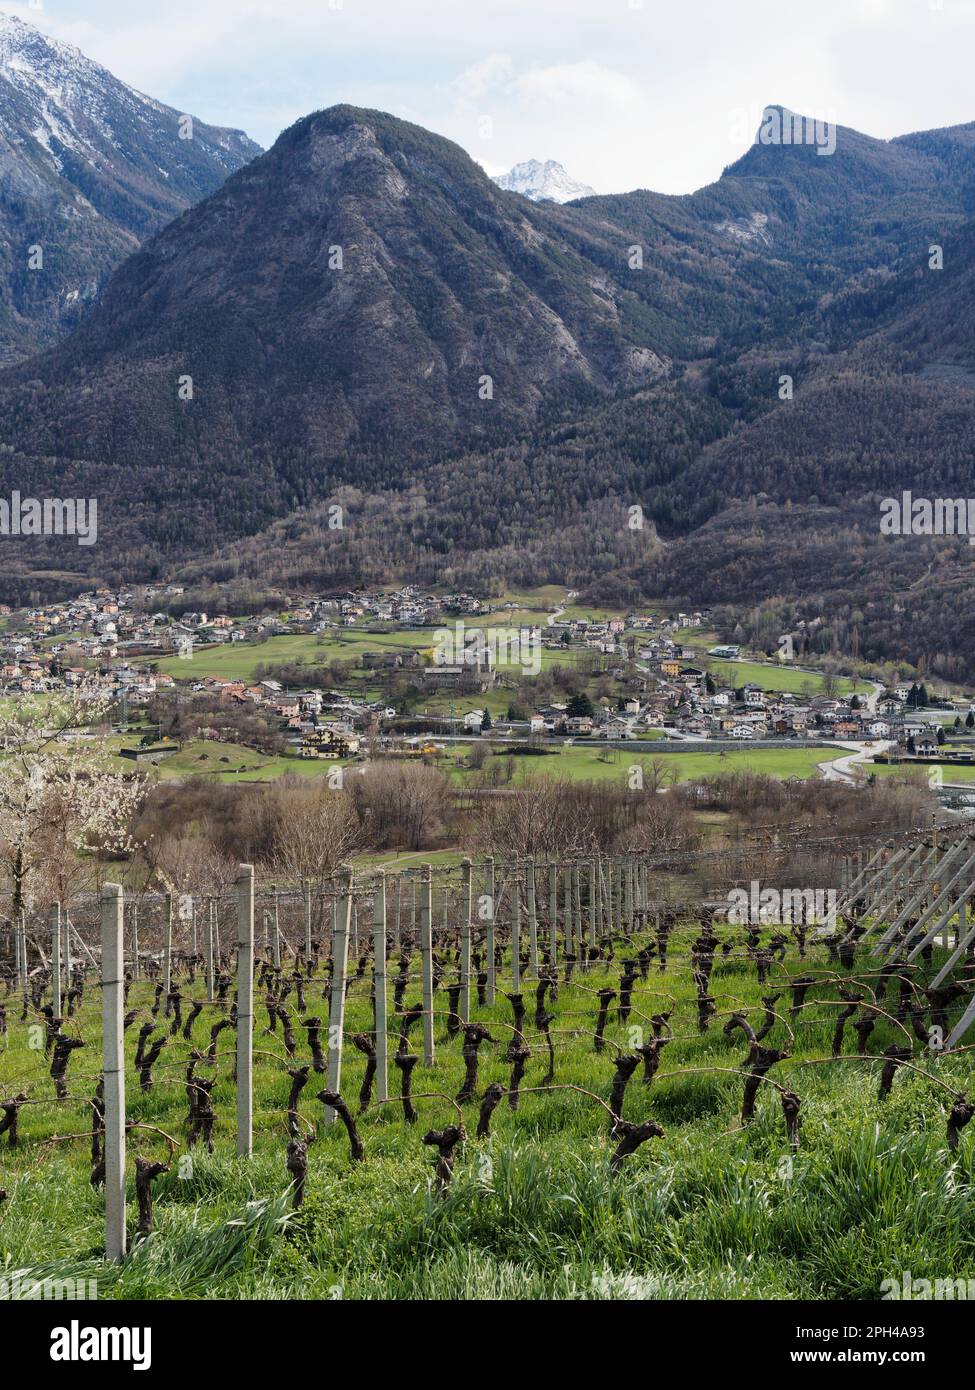 Le vignoble les Granges surplombe la ville de Fenis et son château sous les montagnes enneigées des alpes. Vallée d'Aoste, Italie Banque D'Images